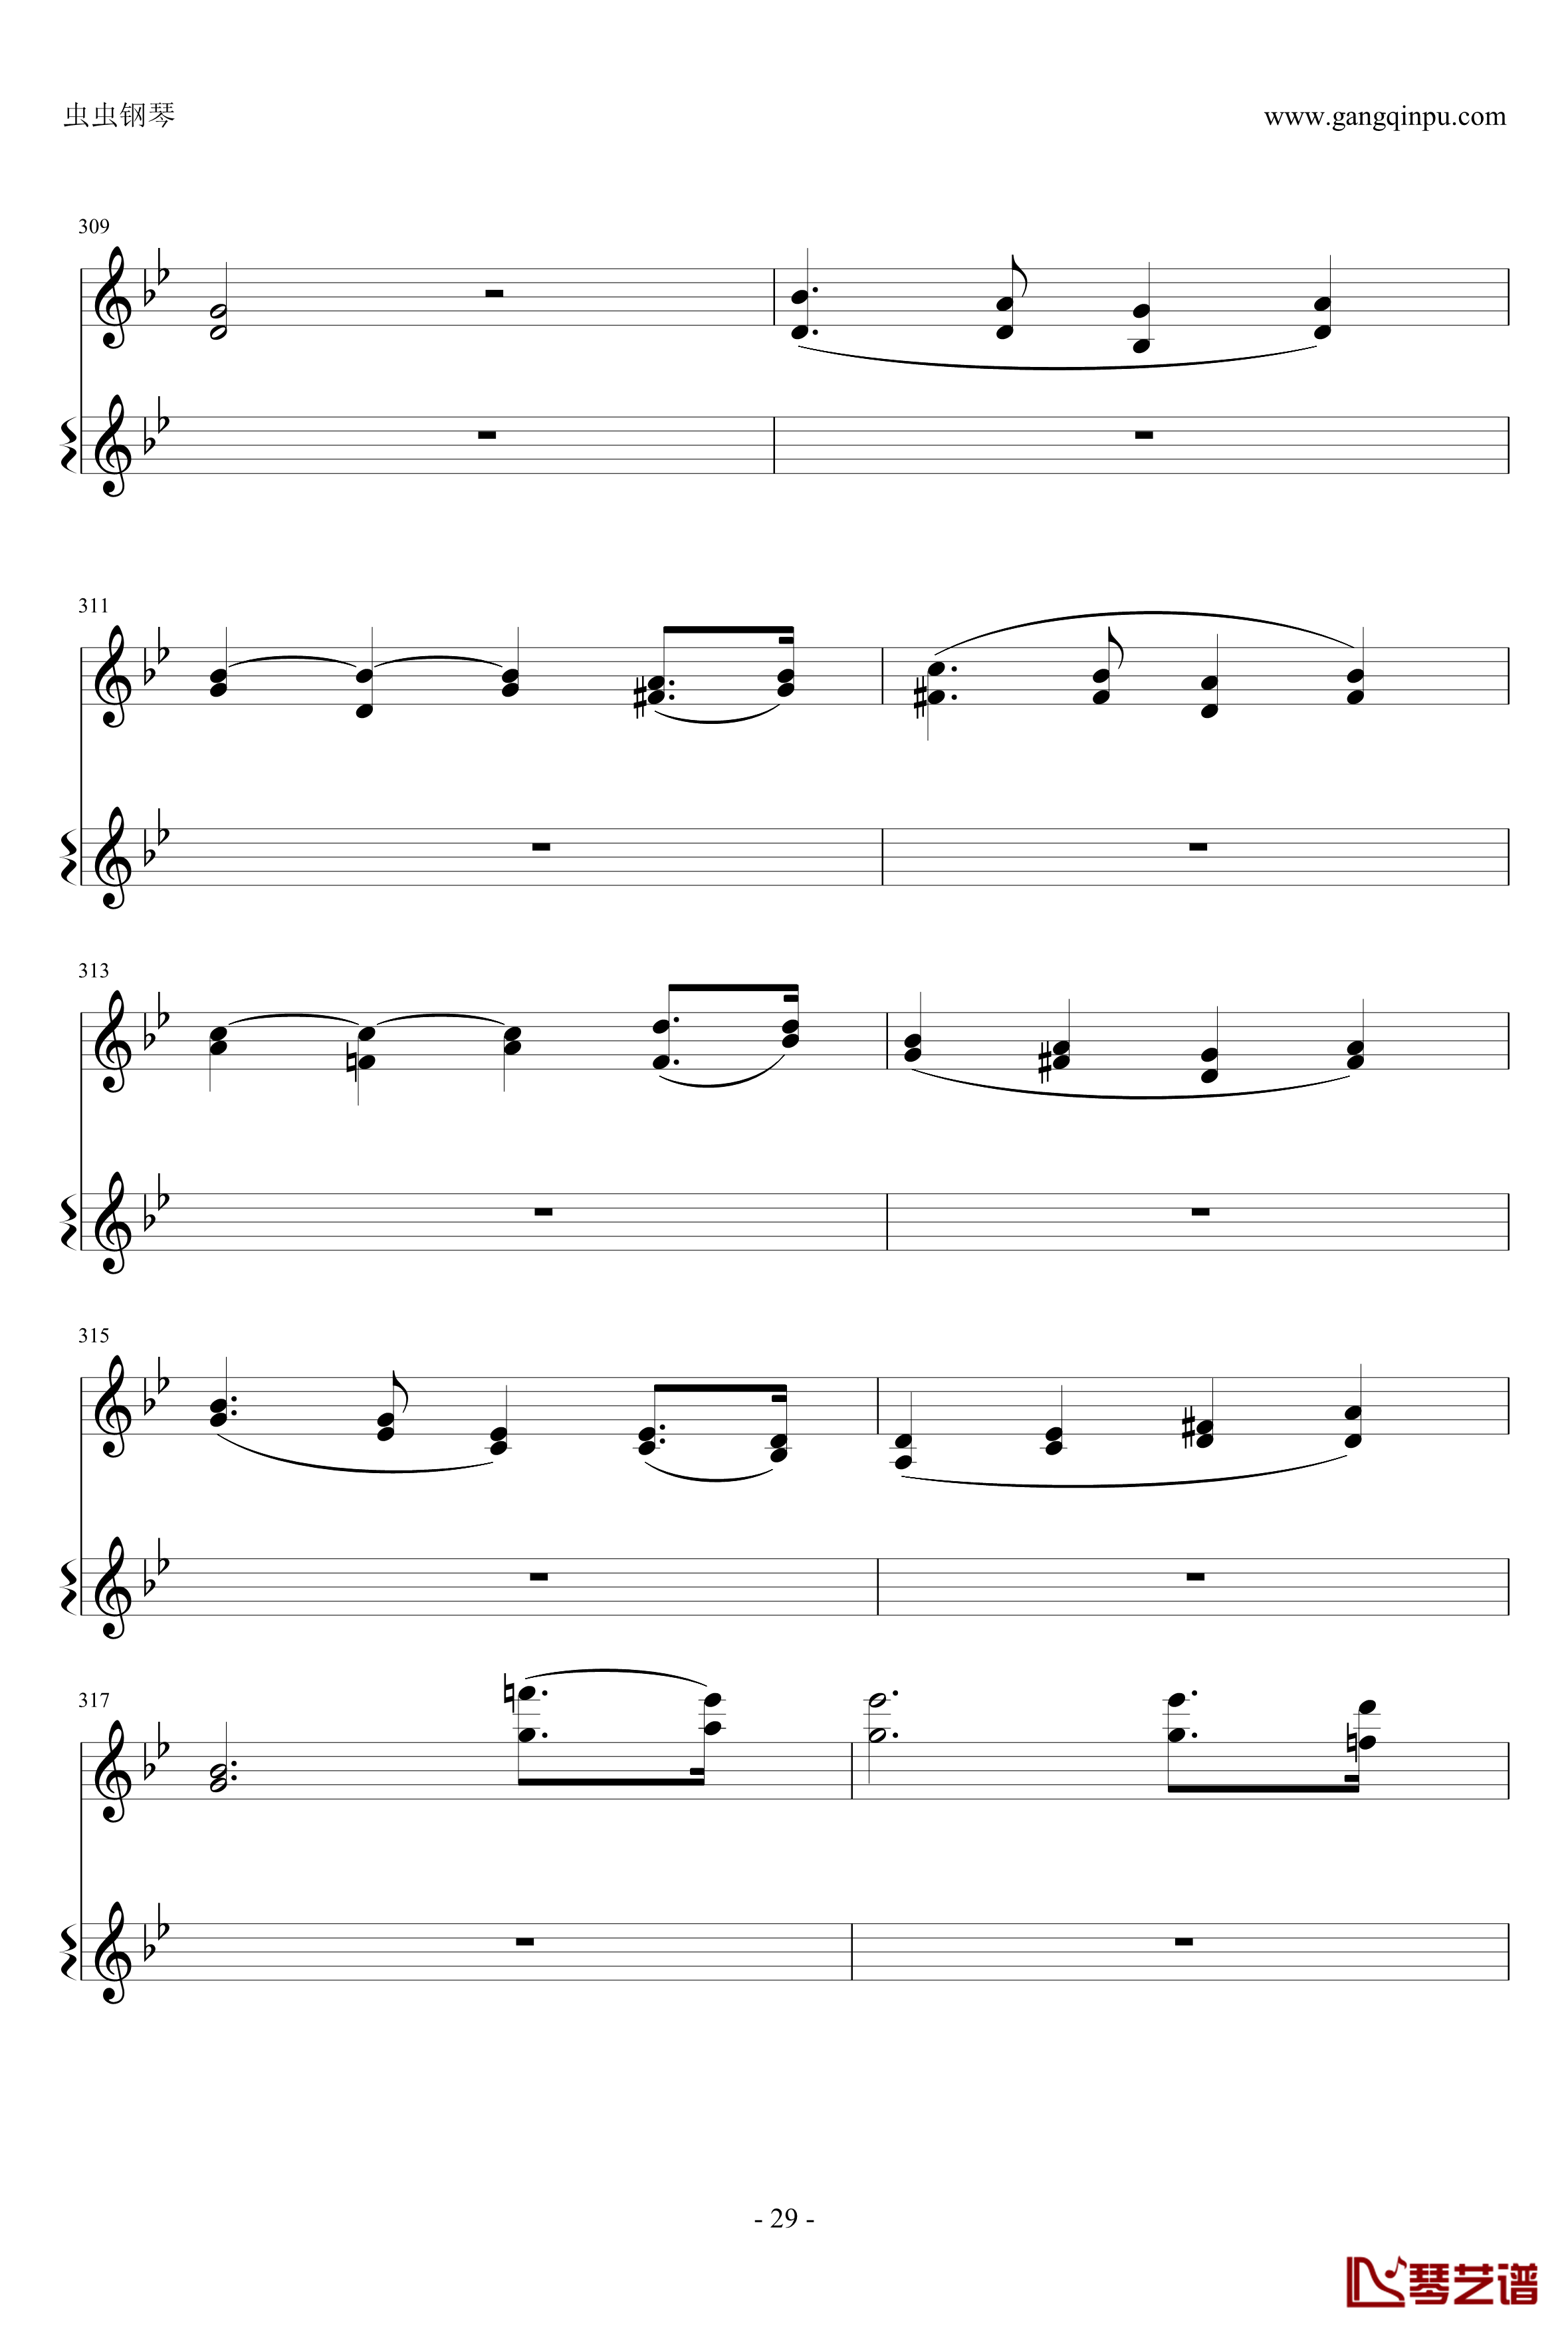 意大利国歌钢琴谱-变奏曲修改版-DXF29